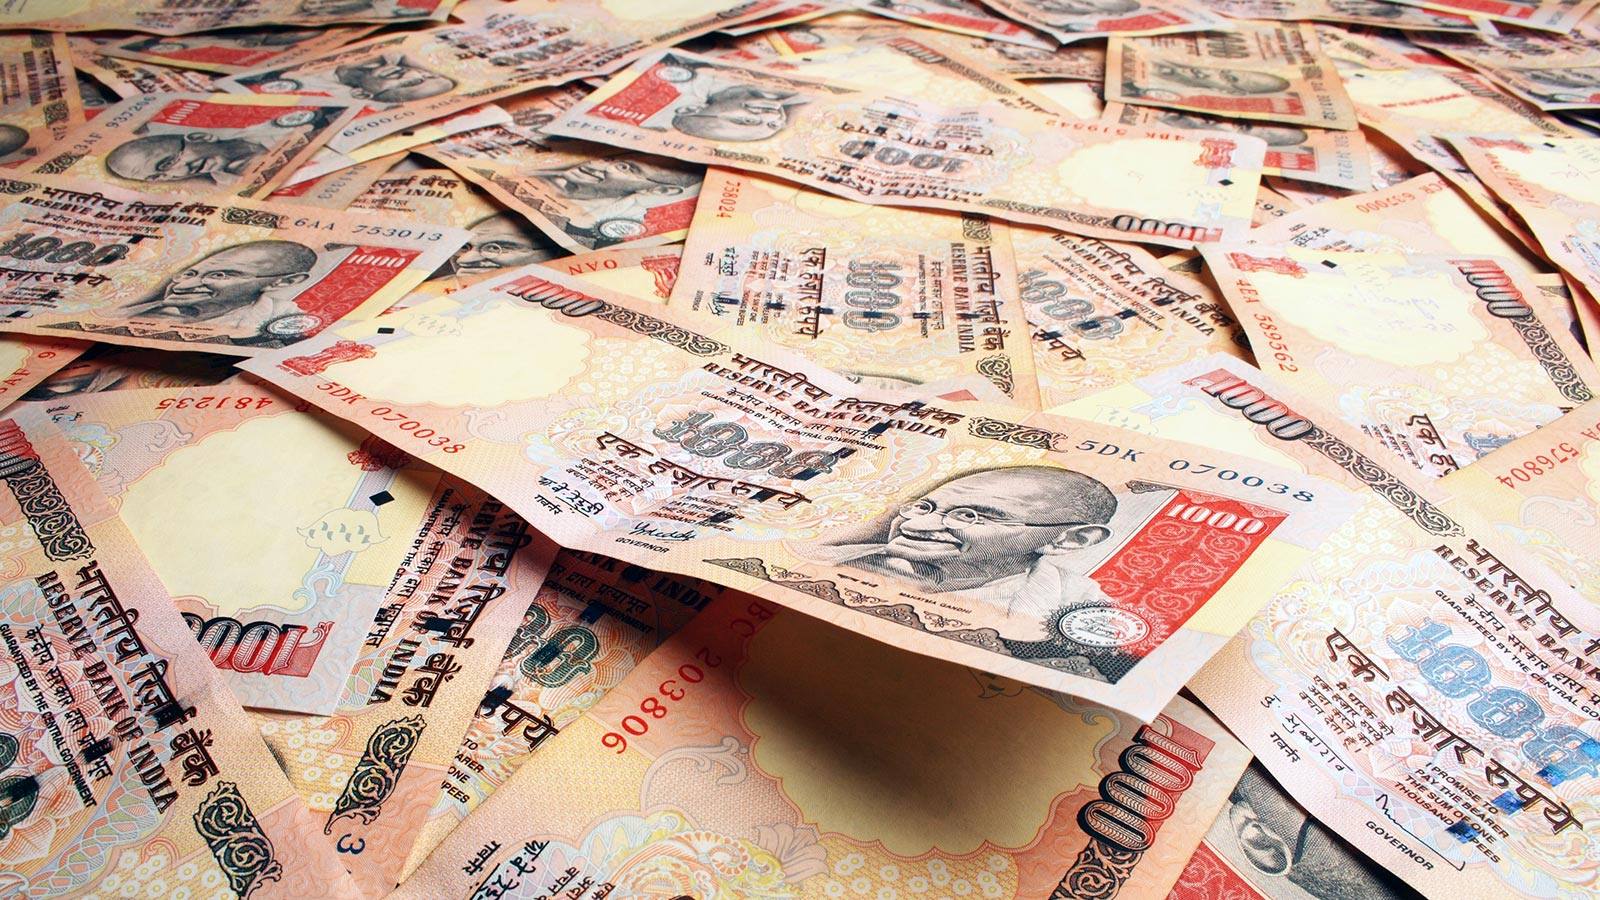 indisches geld wallpaper hd,geld,kasse,banknote,papier,geldhandhabung